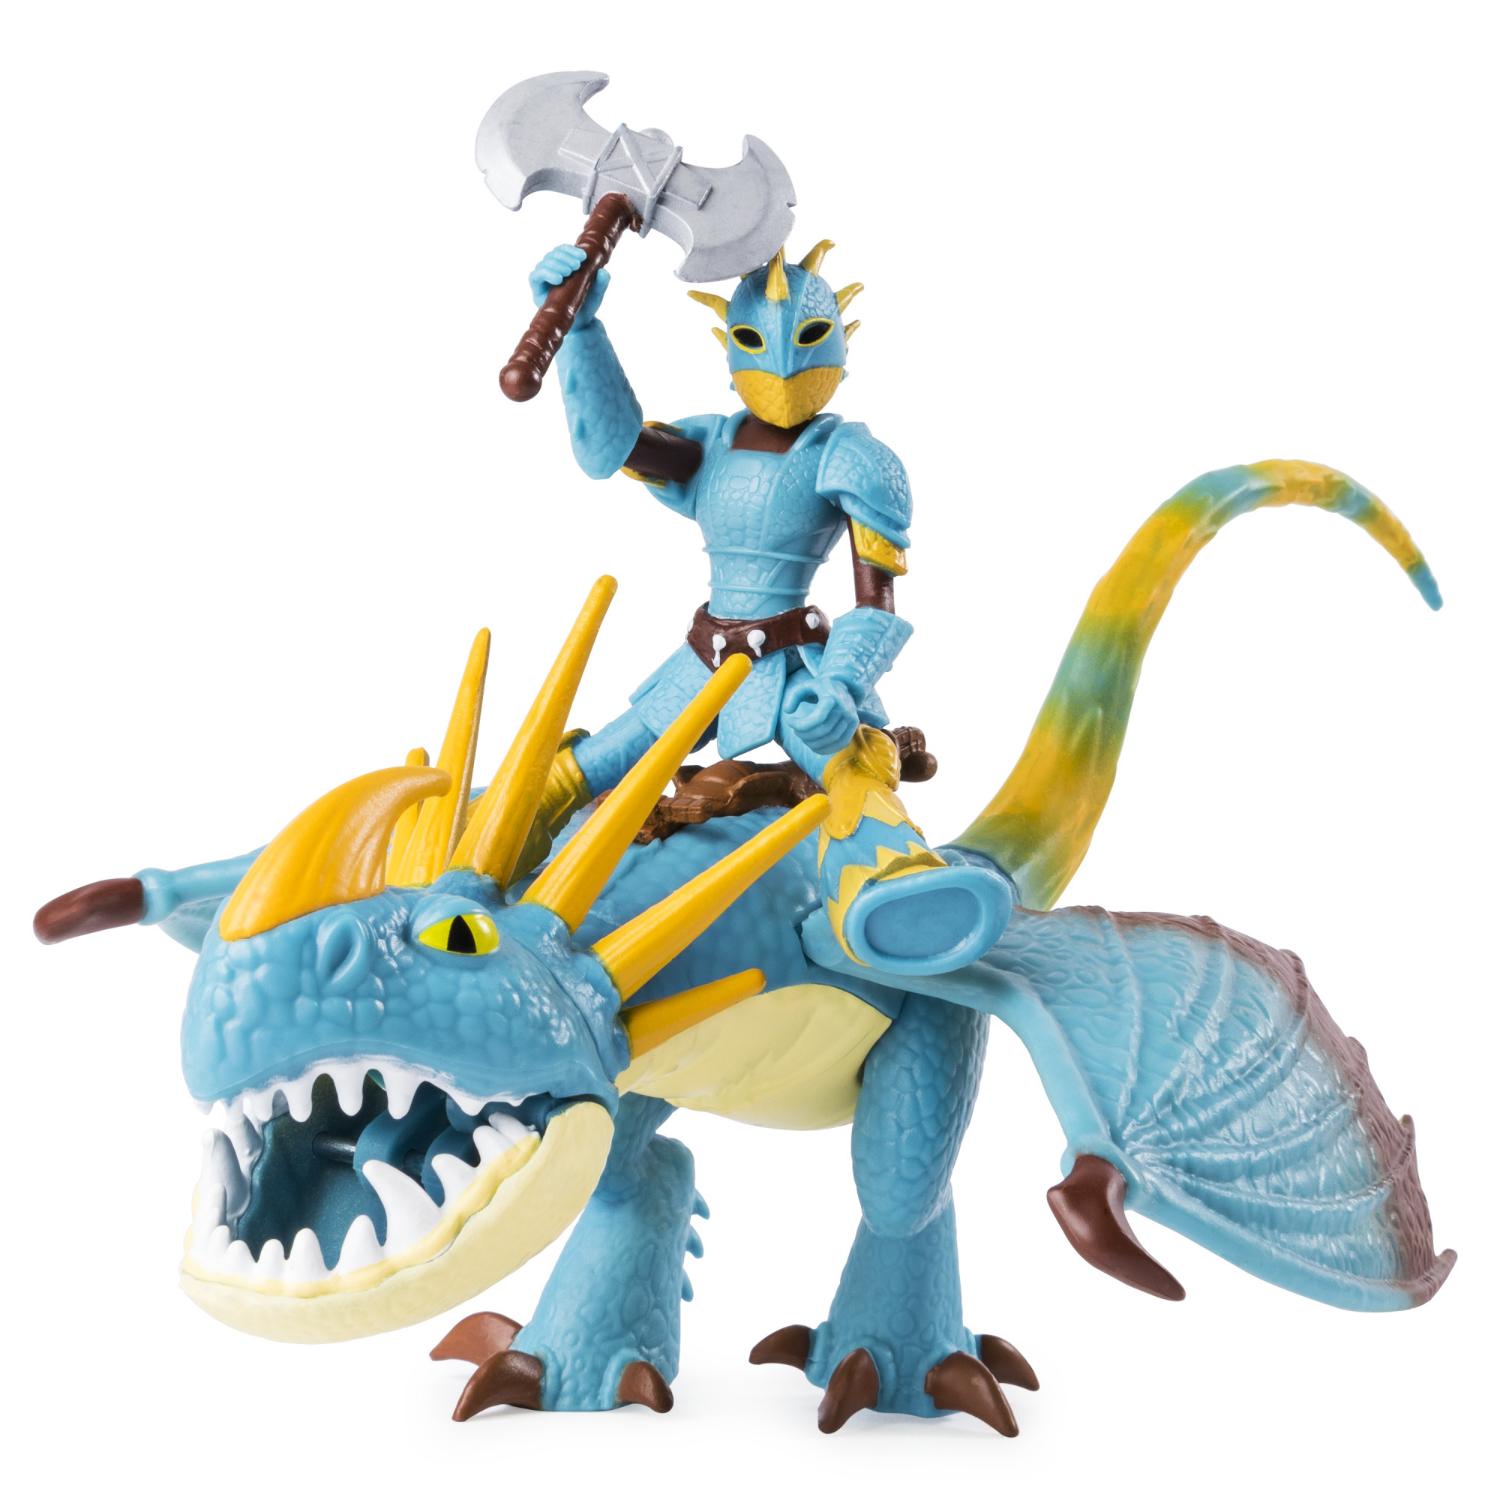 Dragons Игровой набор дракон и фигурка - Громгильда и Астрид